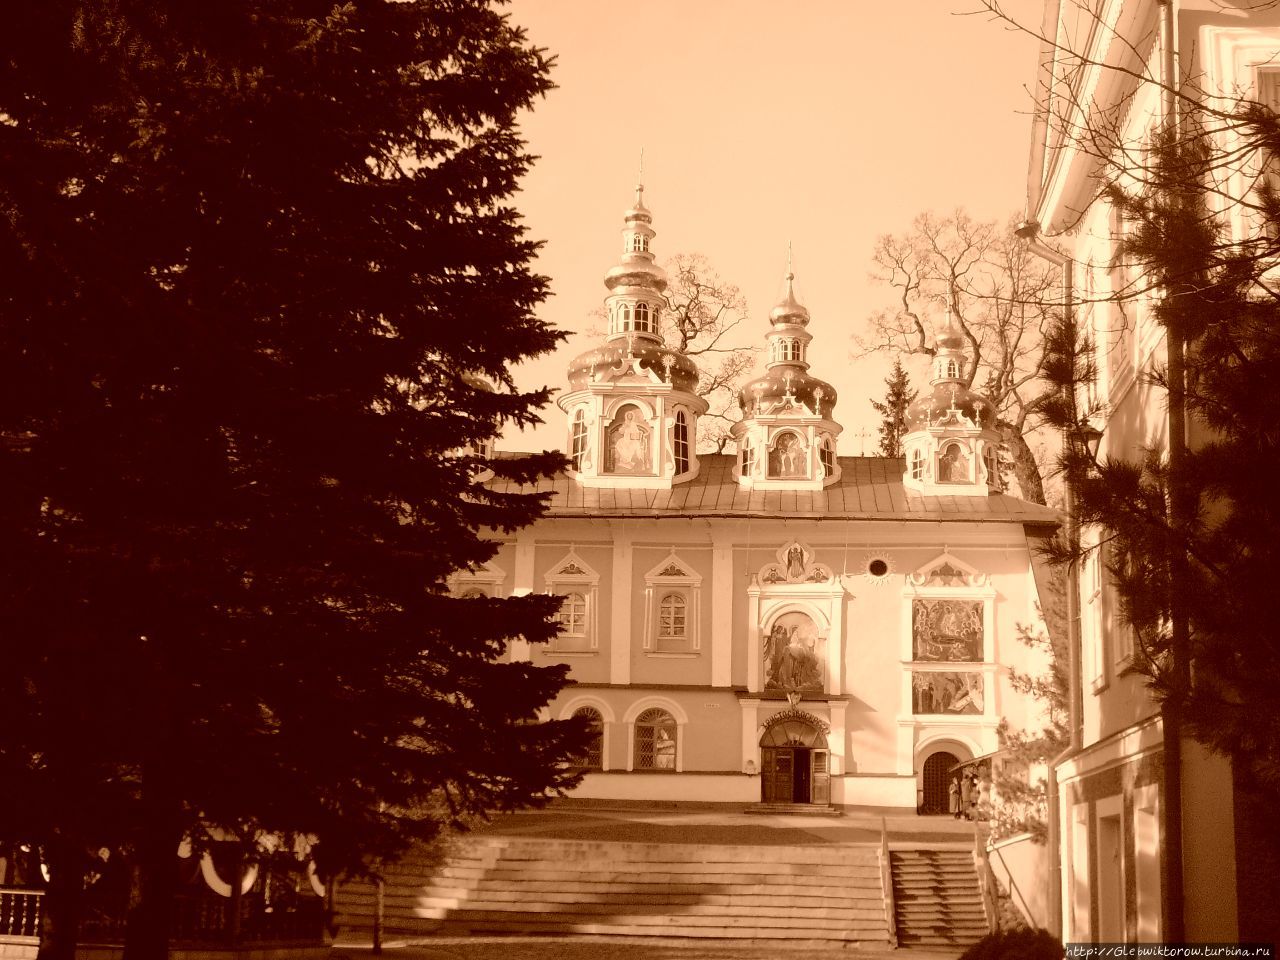 Посещение монастыря в начале мая Печоры, Россия